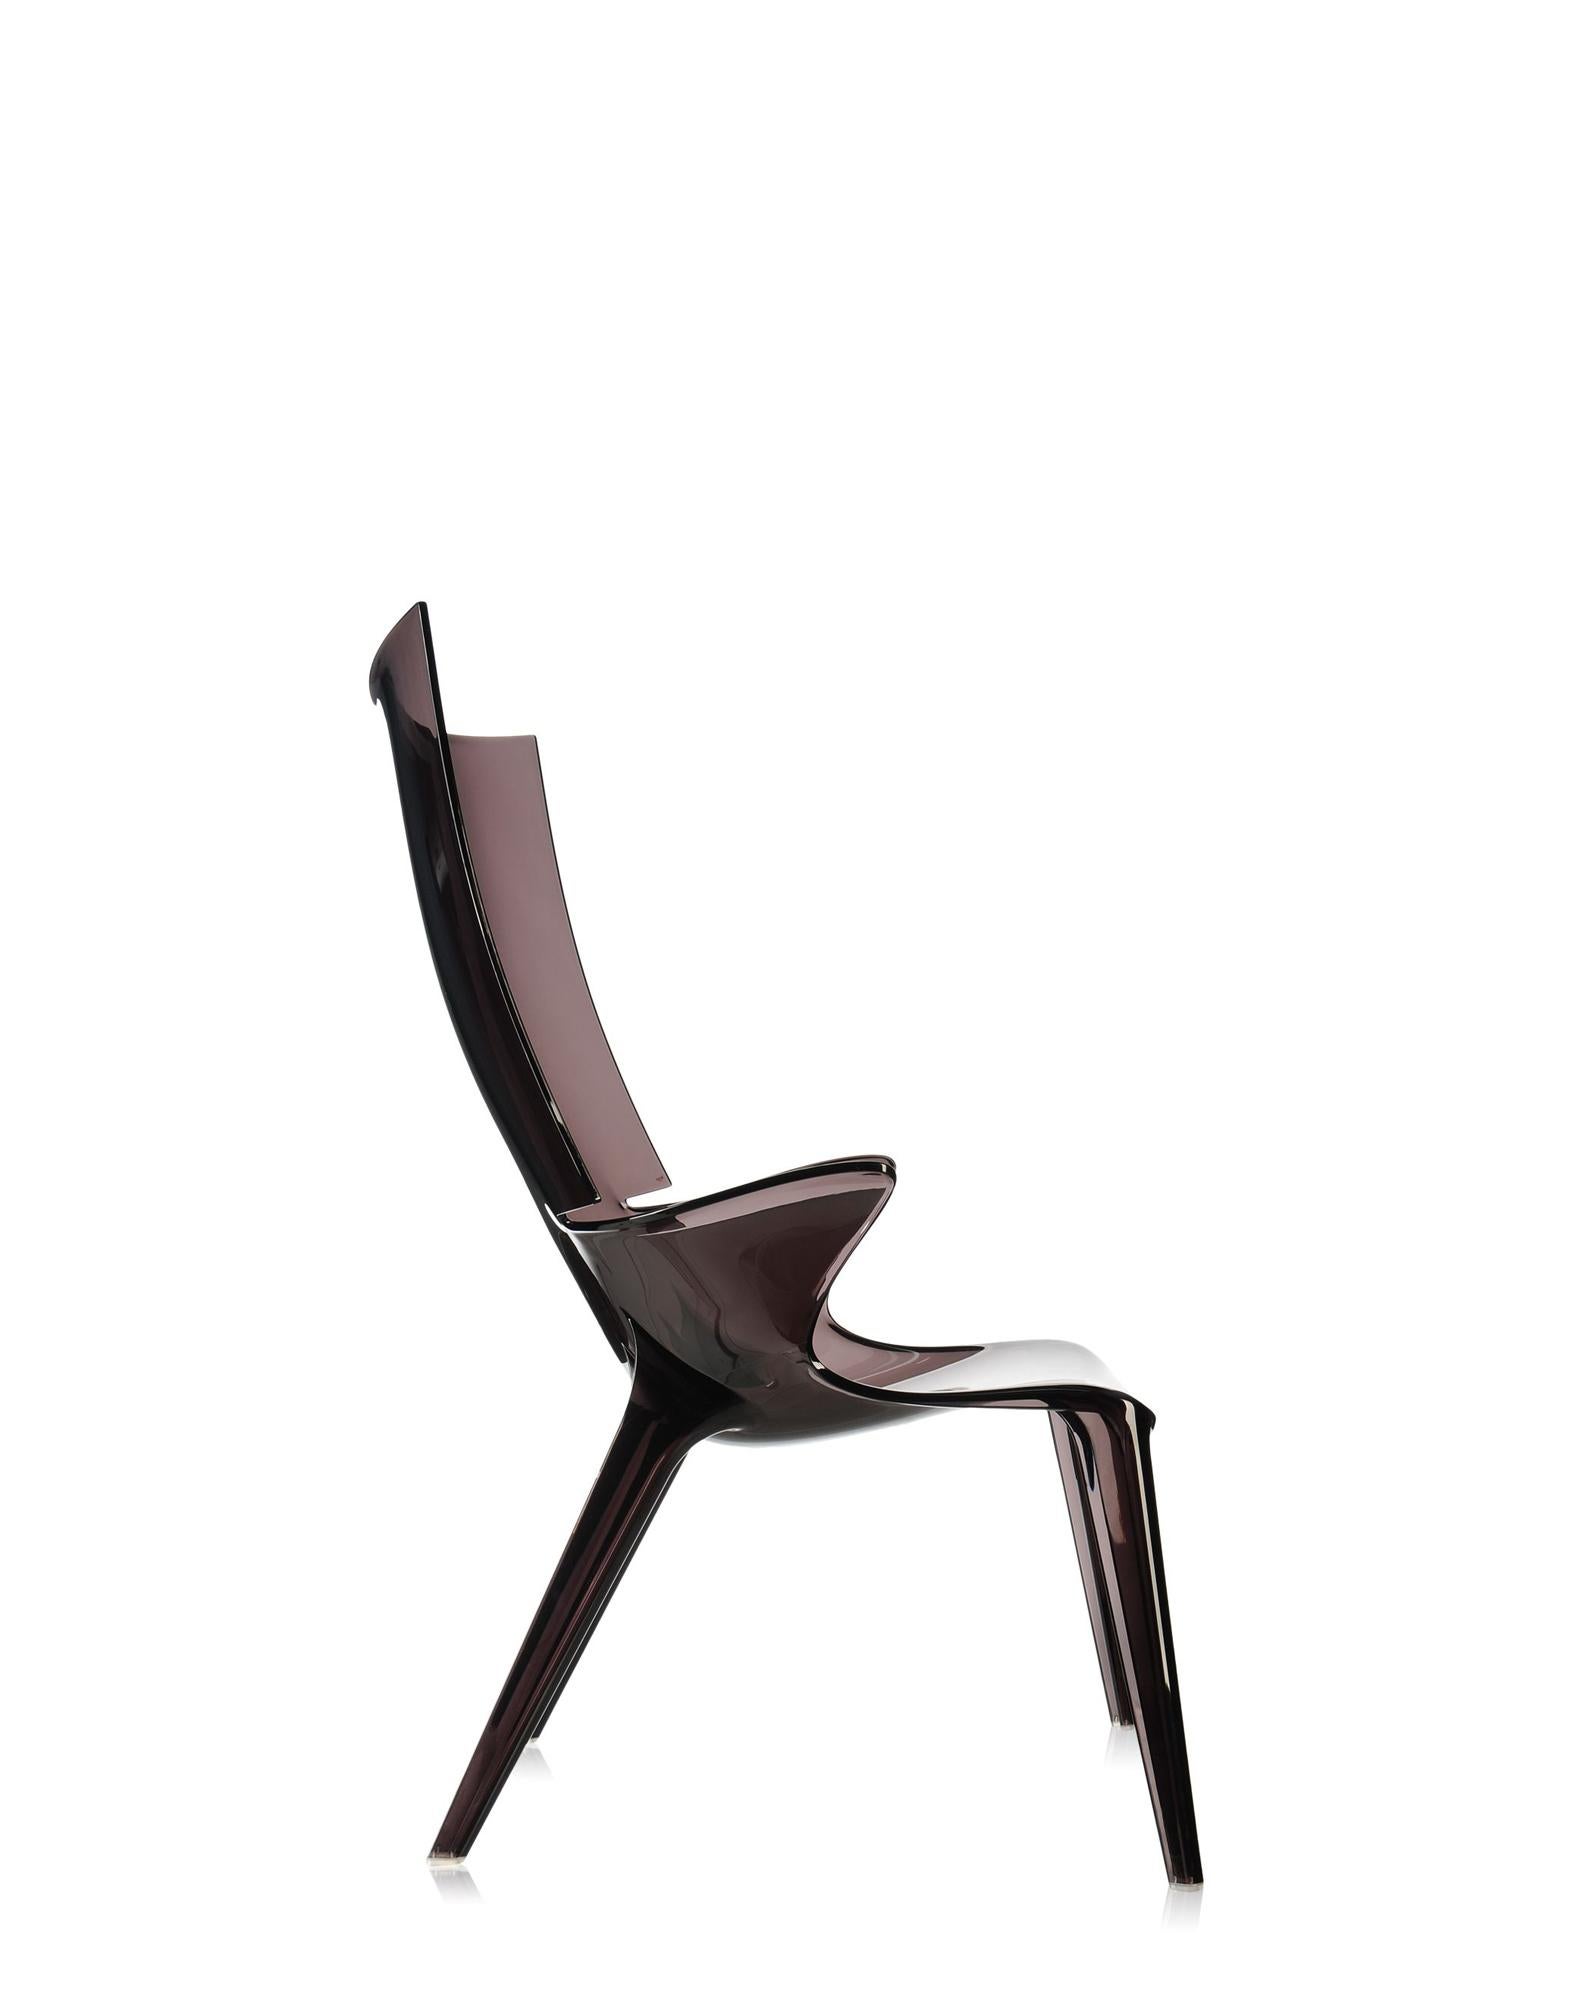 La collection Uncle conçue par Philippe Starck s'enrichit du fauteuil Uncle Jim. Le fauteuil reprend les lignes et la sinuosité de l'Oncle Jack et se prête à un large éventail de besoins en matière d'ameublement.

Fabriqué en : Polycarbonate.